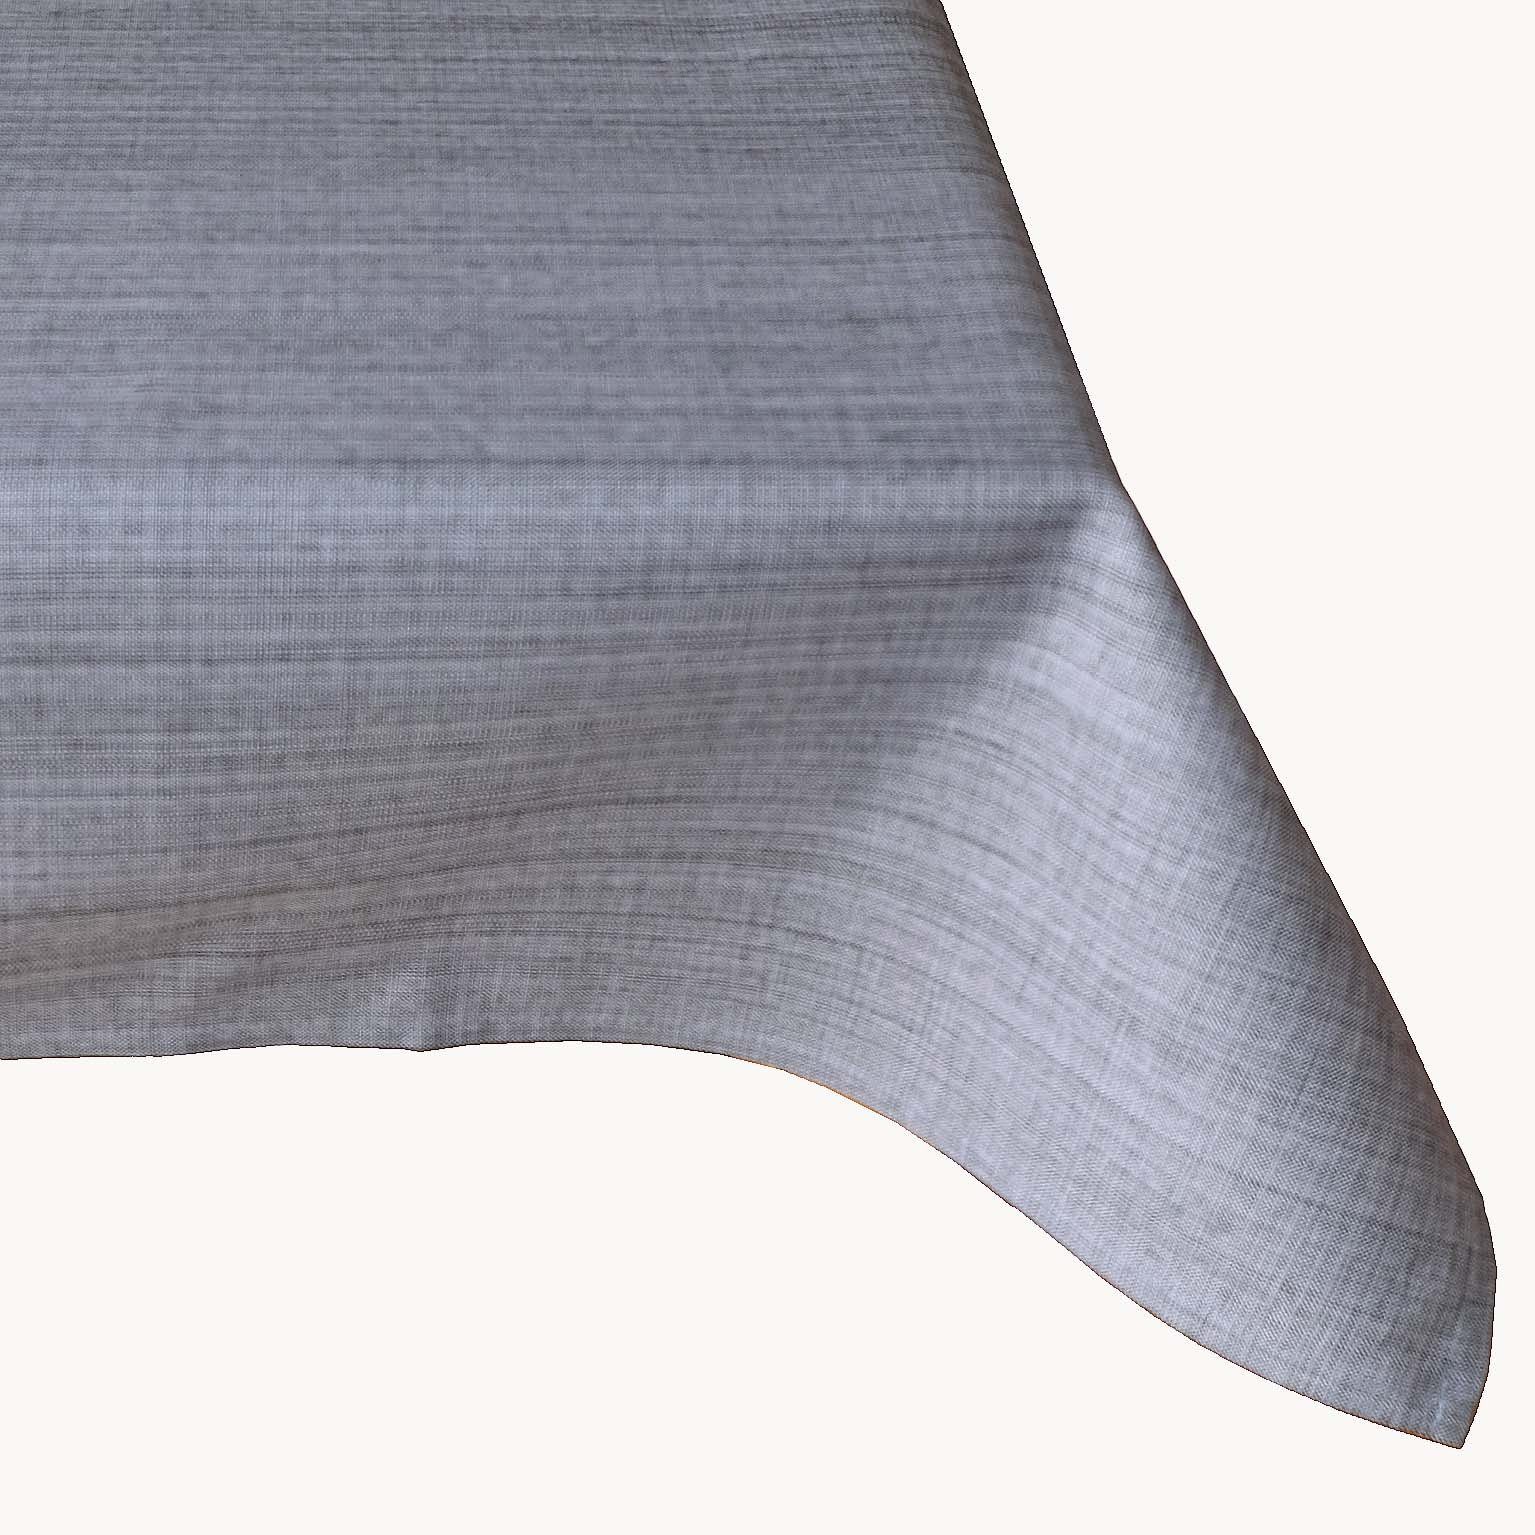 TextilDepot24 Gartentischdecke Outdoor Tischwäsche wetterbeständig für Draussen und Drinnen, meliert grau